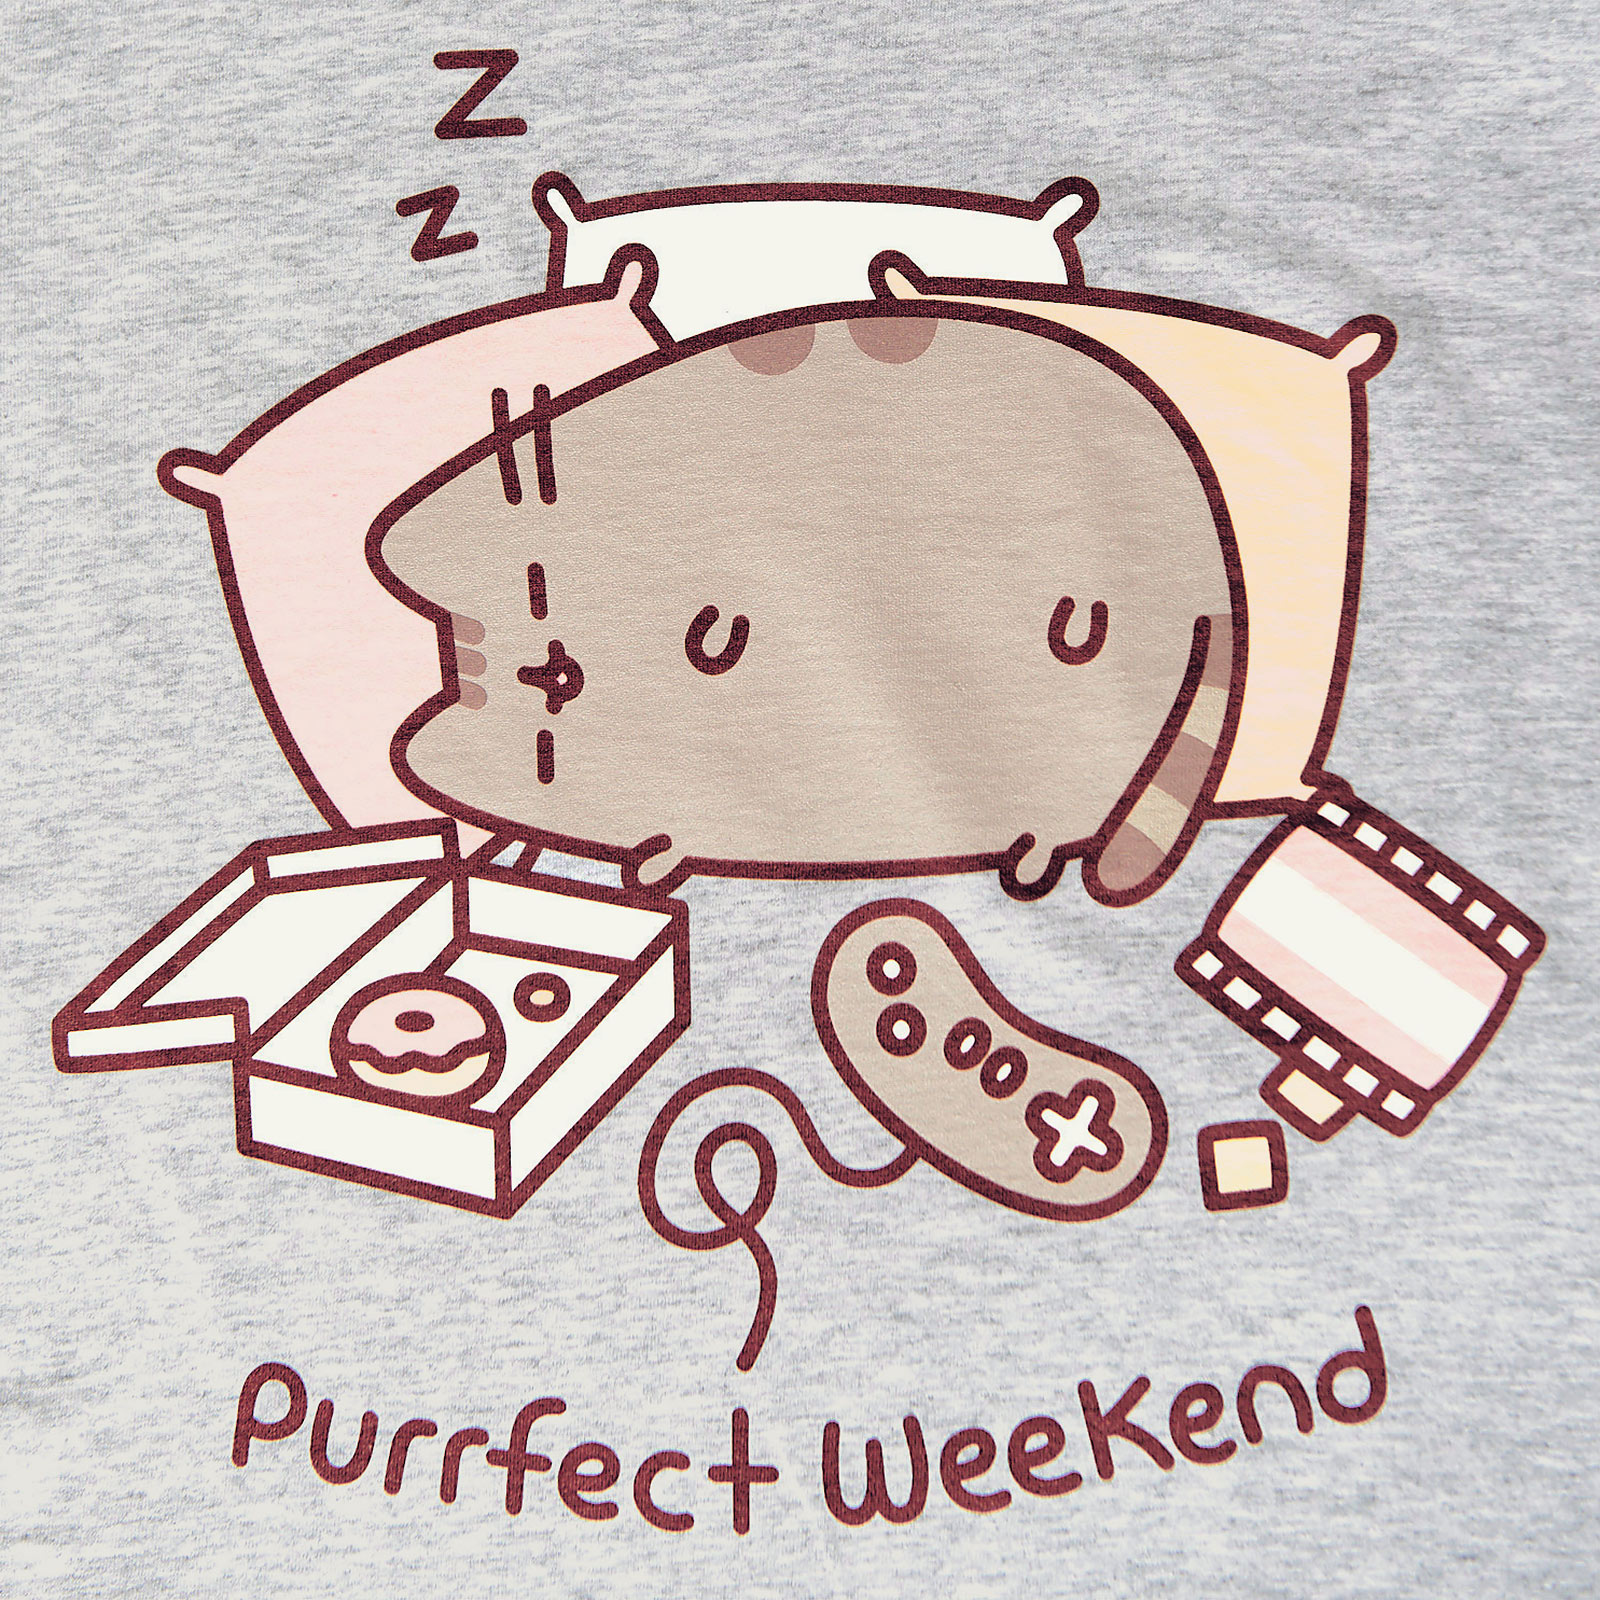 Pusheen - Purrfect Weekend Women's T-Shirt Grey